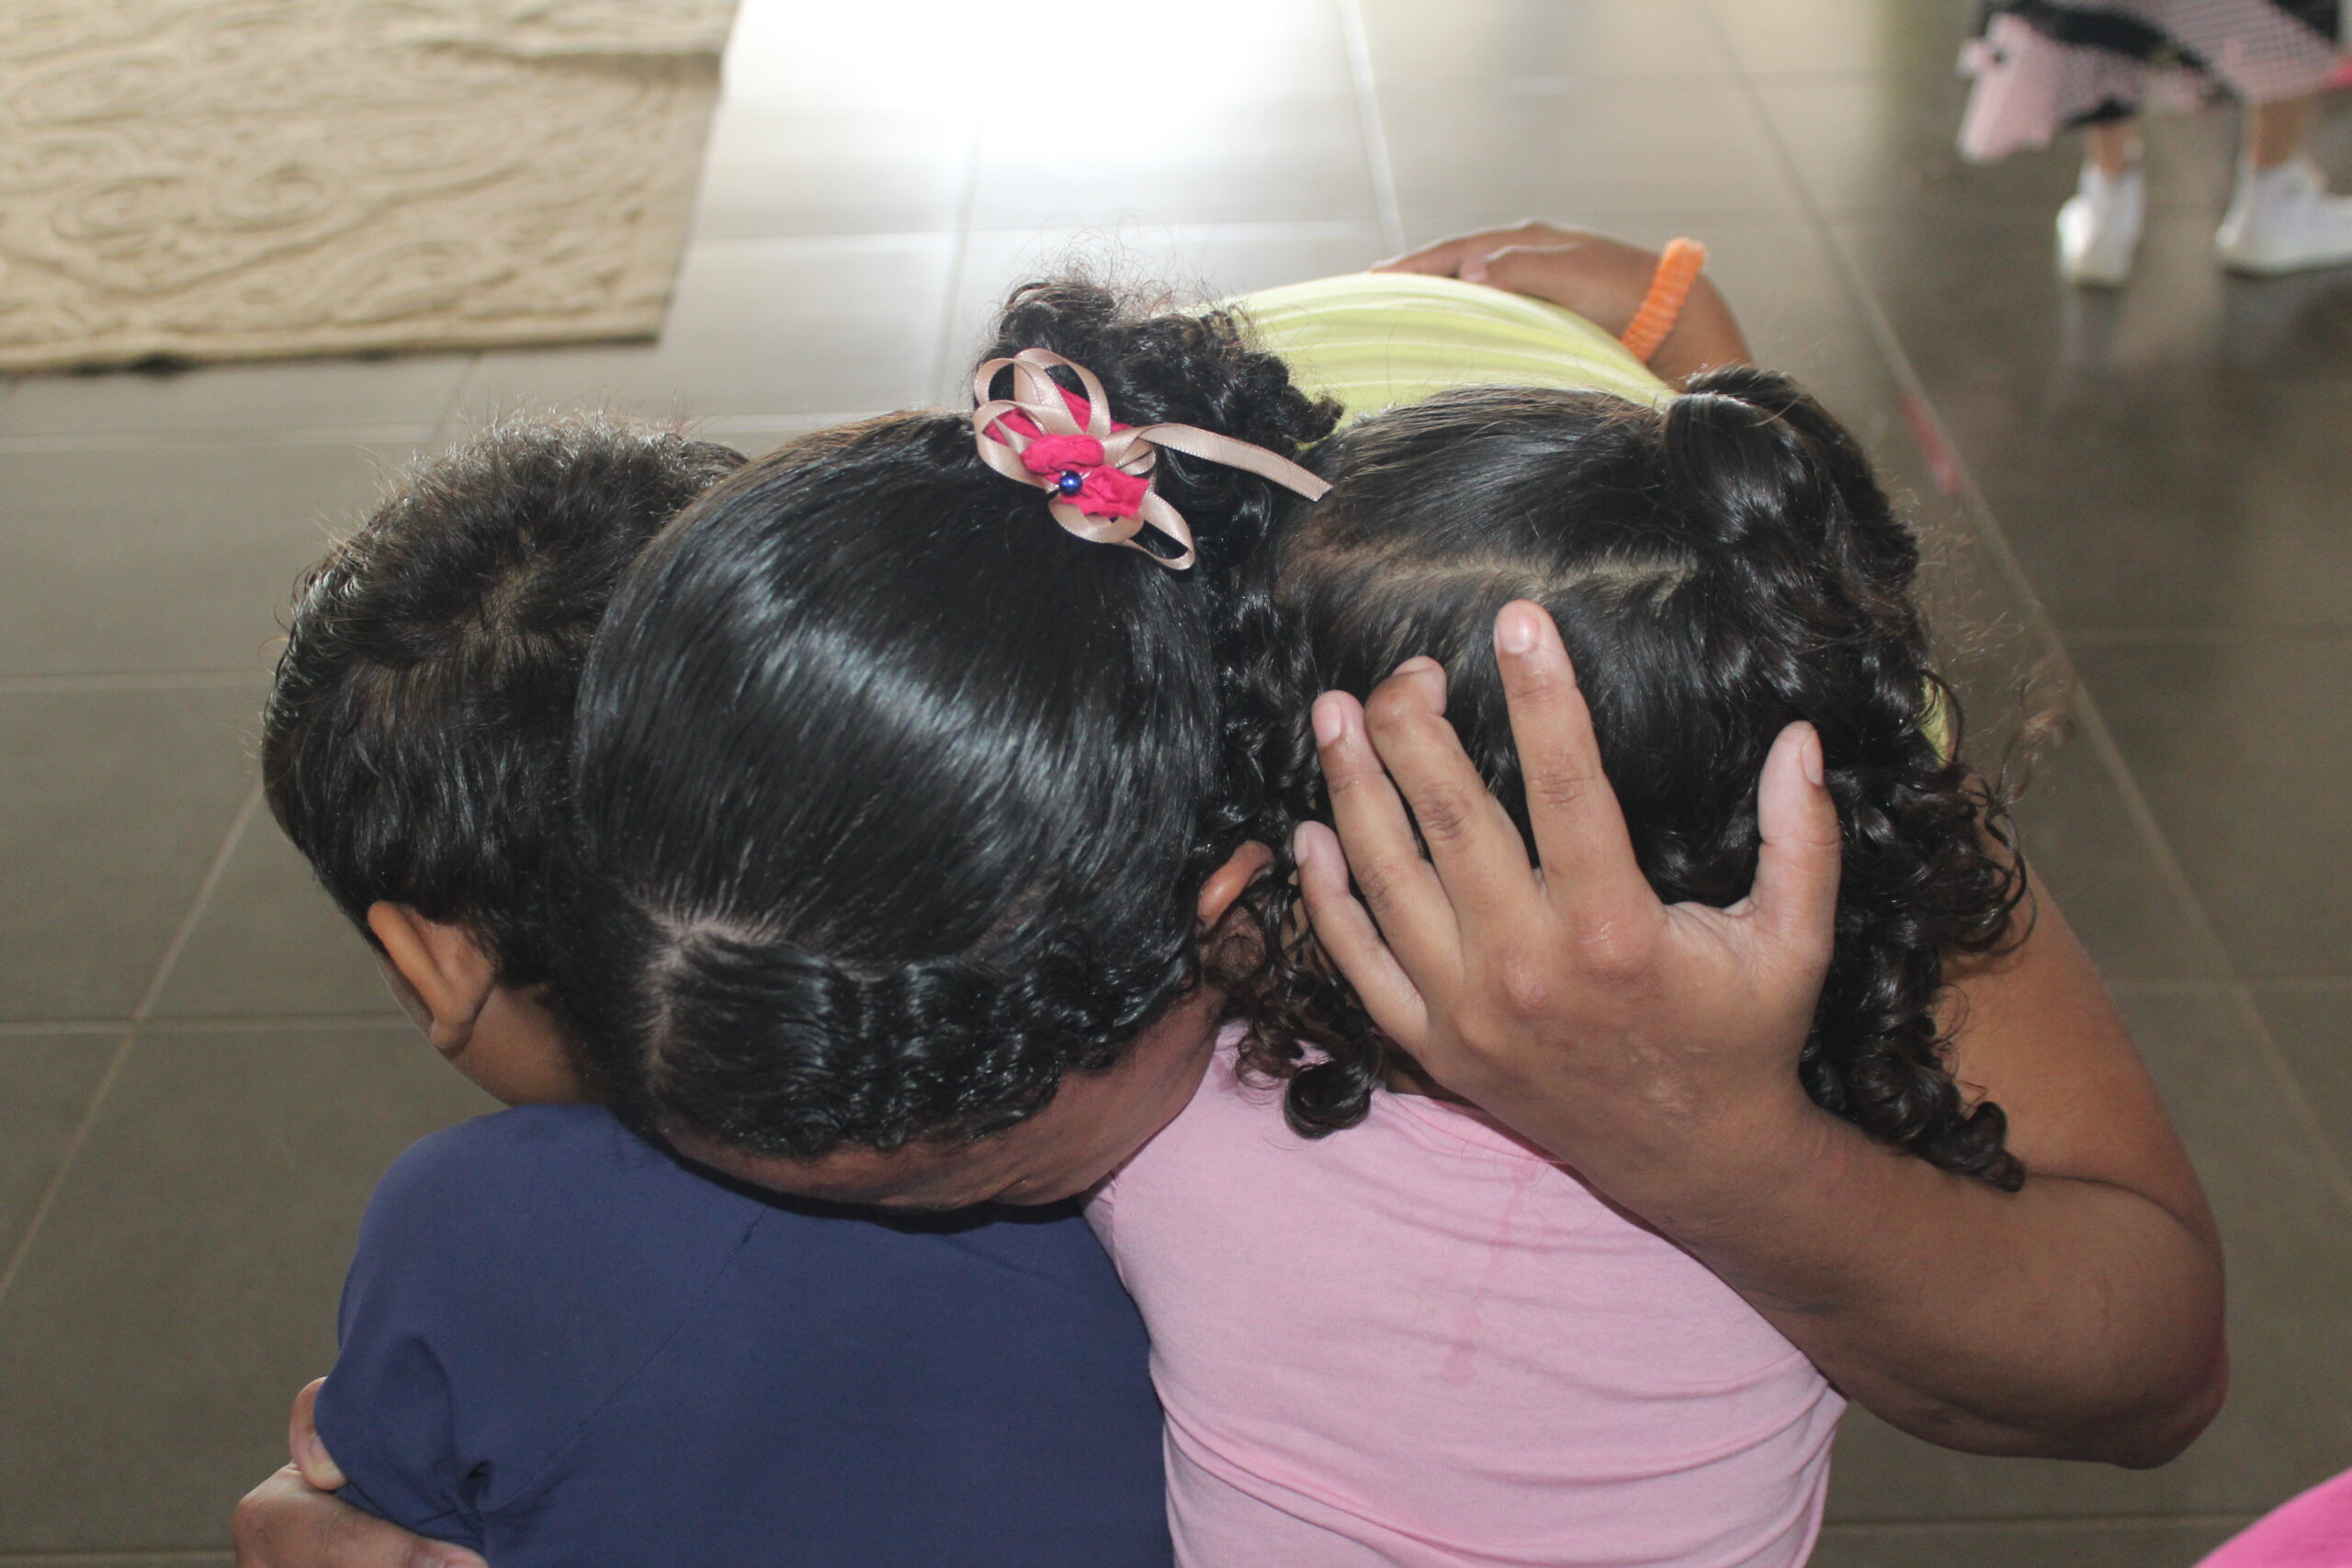 Quero abraçar meu filho pela última vez', diz mãe de brasileiro